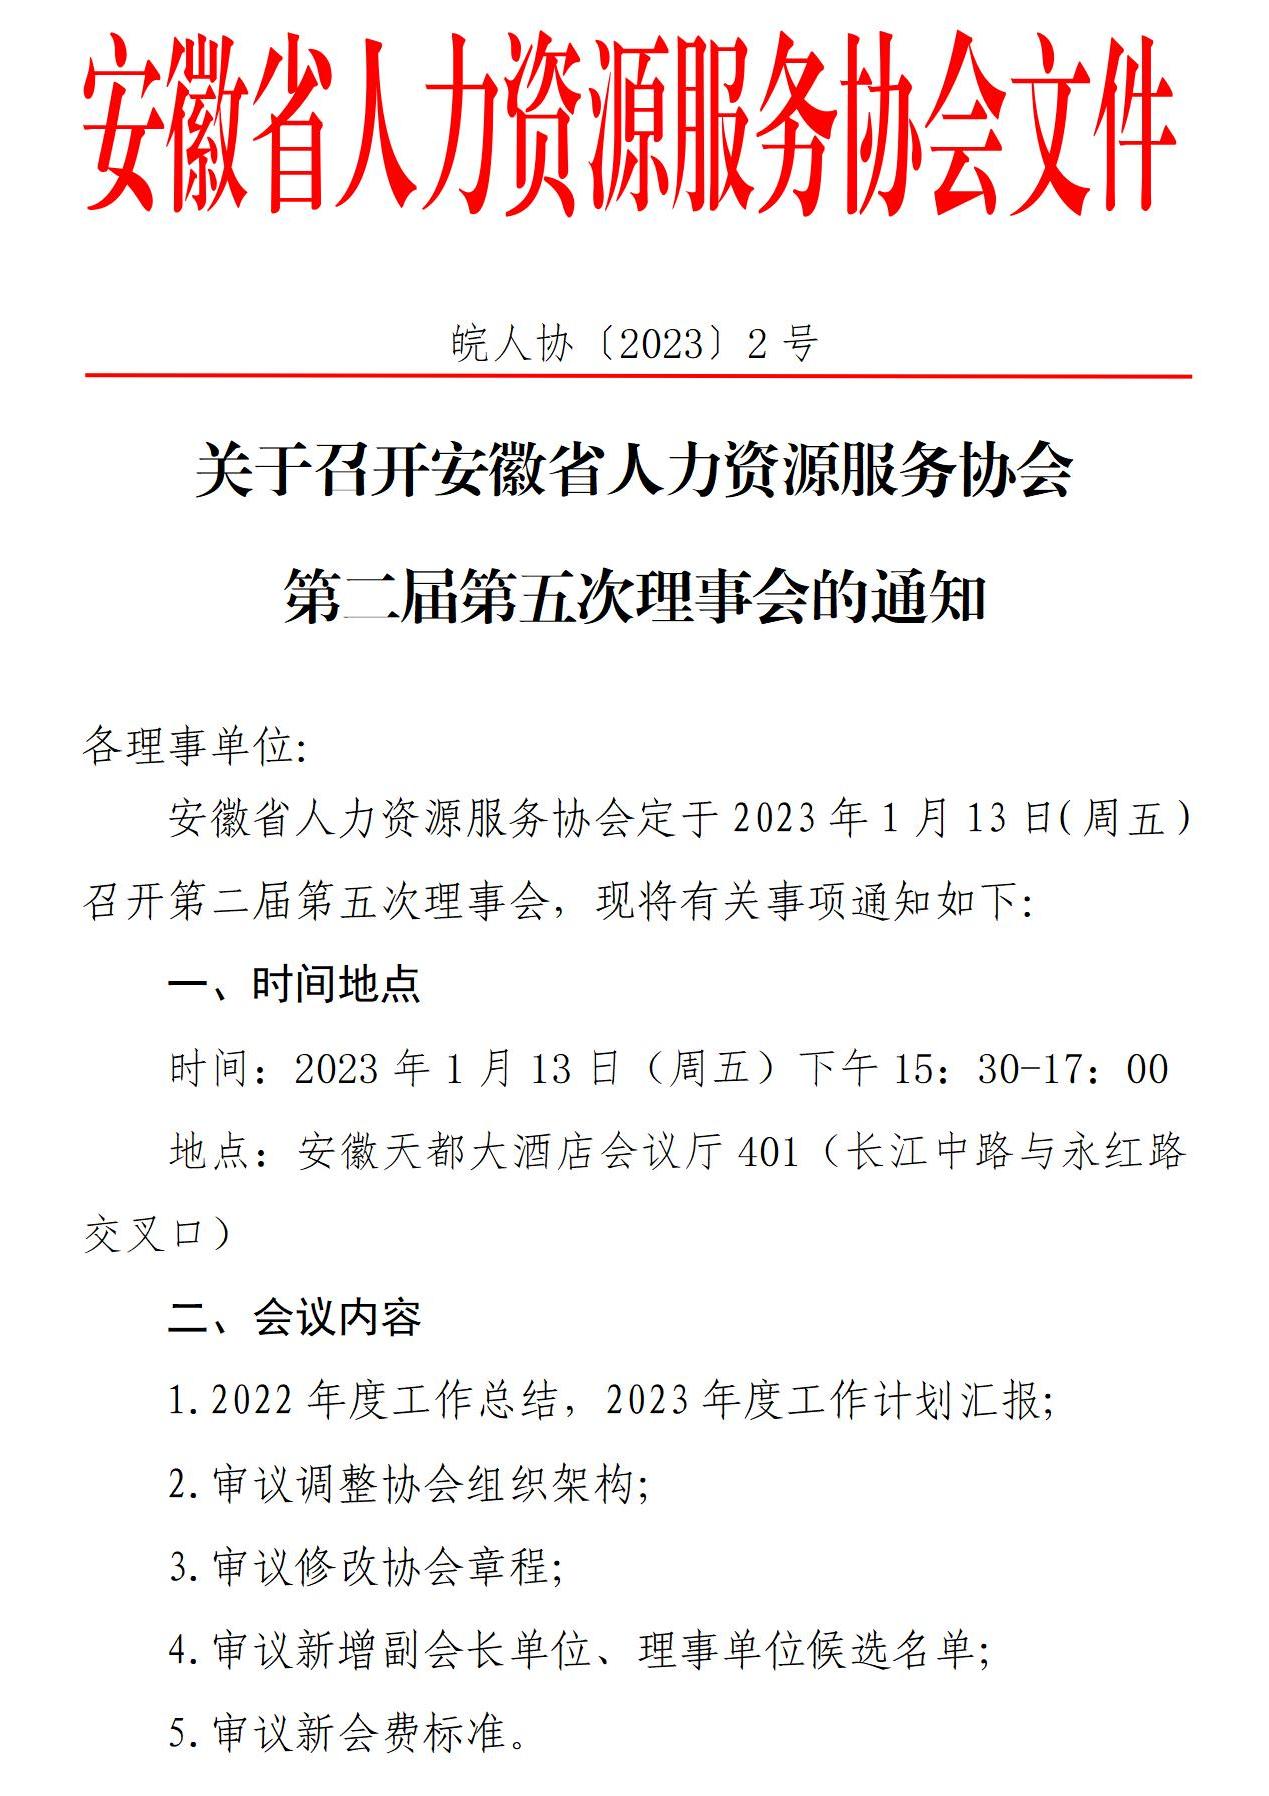 皖人协（2023）2号关于召开第二届第五次理事会的通知_01.jpg